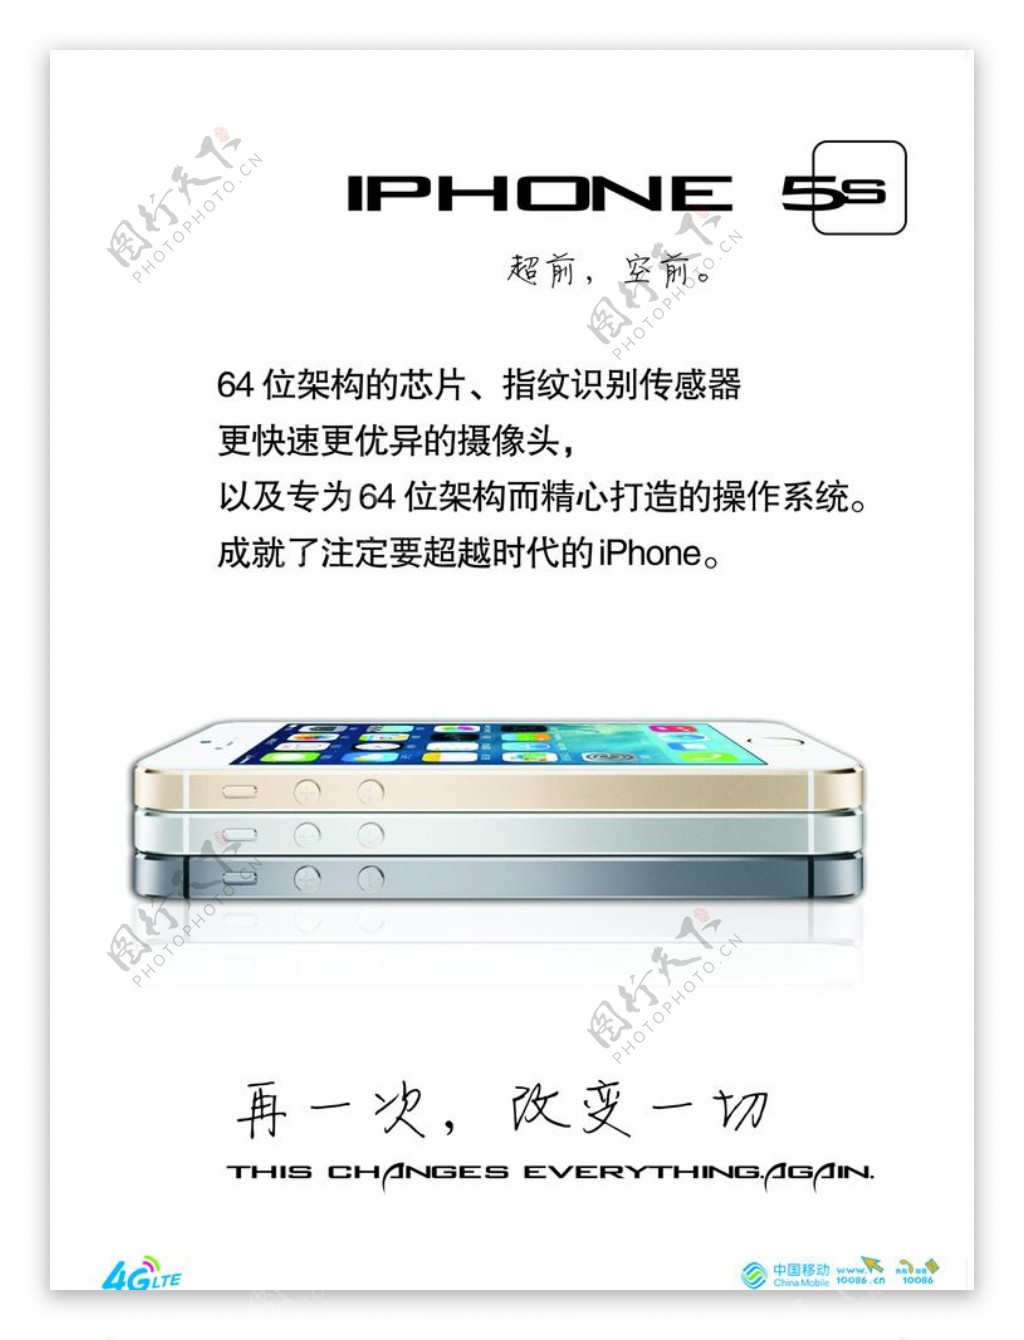 苹果(Apple) iPhone 5S（金色版）手机图片欣赏,图6-万维家电网